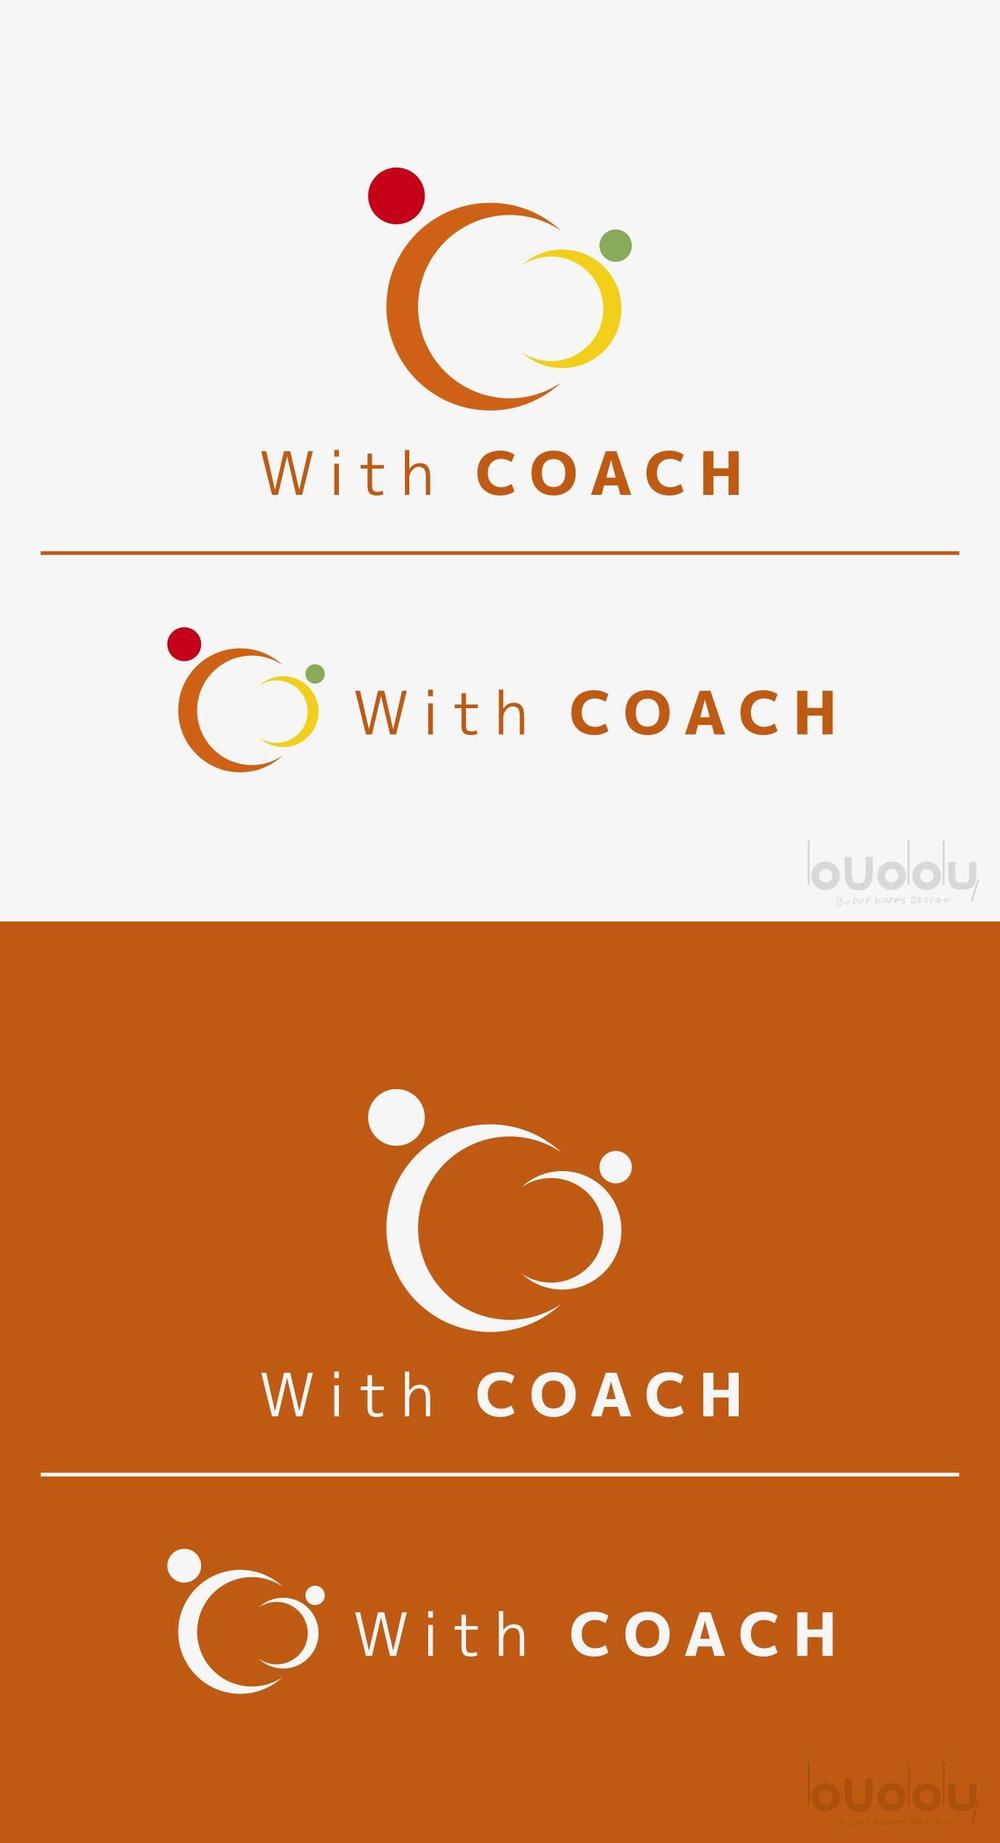 【ロゴの作成】講師のチーム「with コーチ」新規立ち上げに伴うデザインの依頼